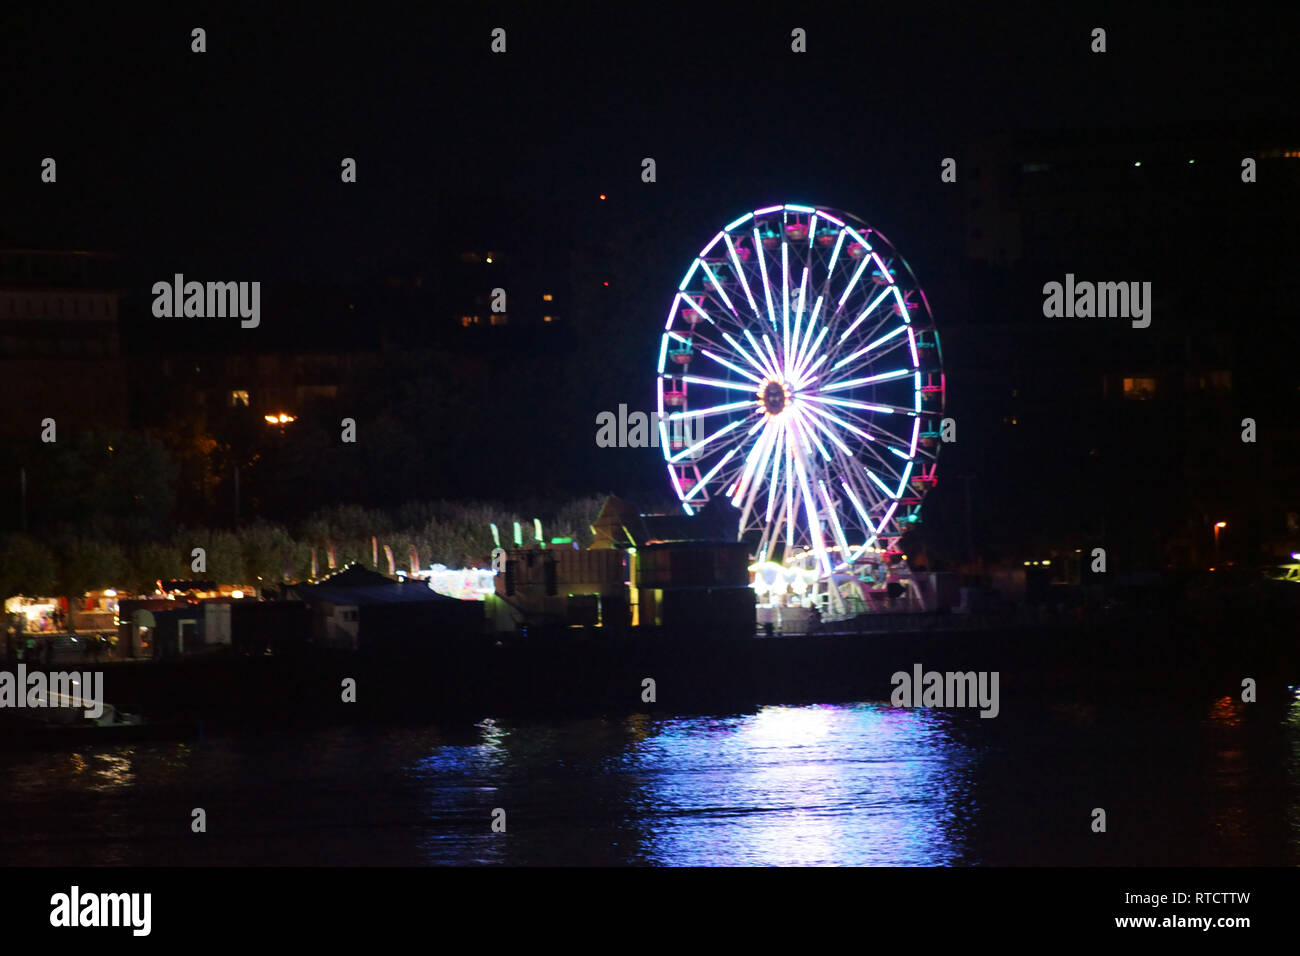 Les lumières d'une grande roue sur une fête foraine dans la nuit derrière une rivière. Banque D'Images